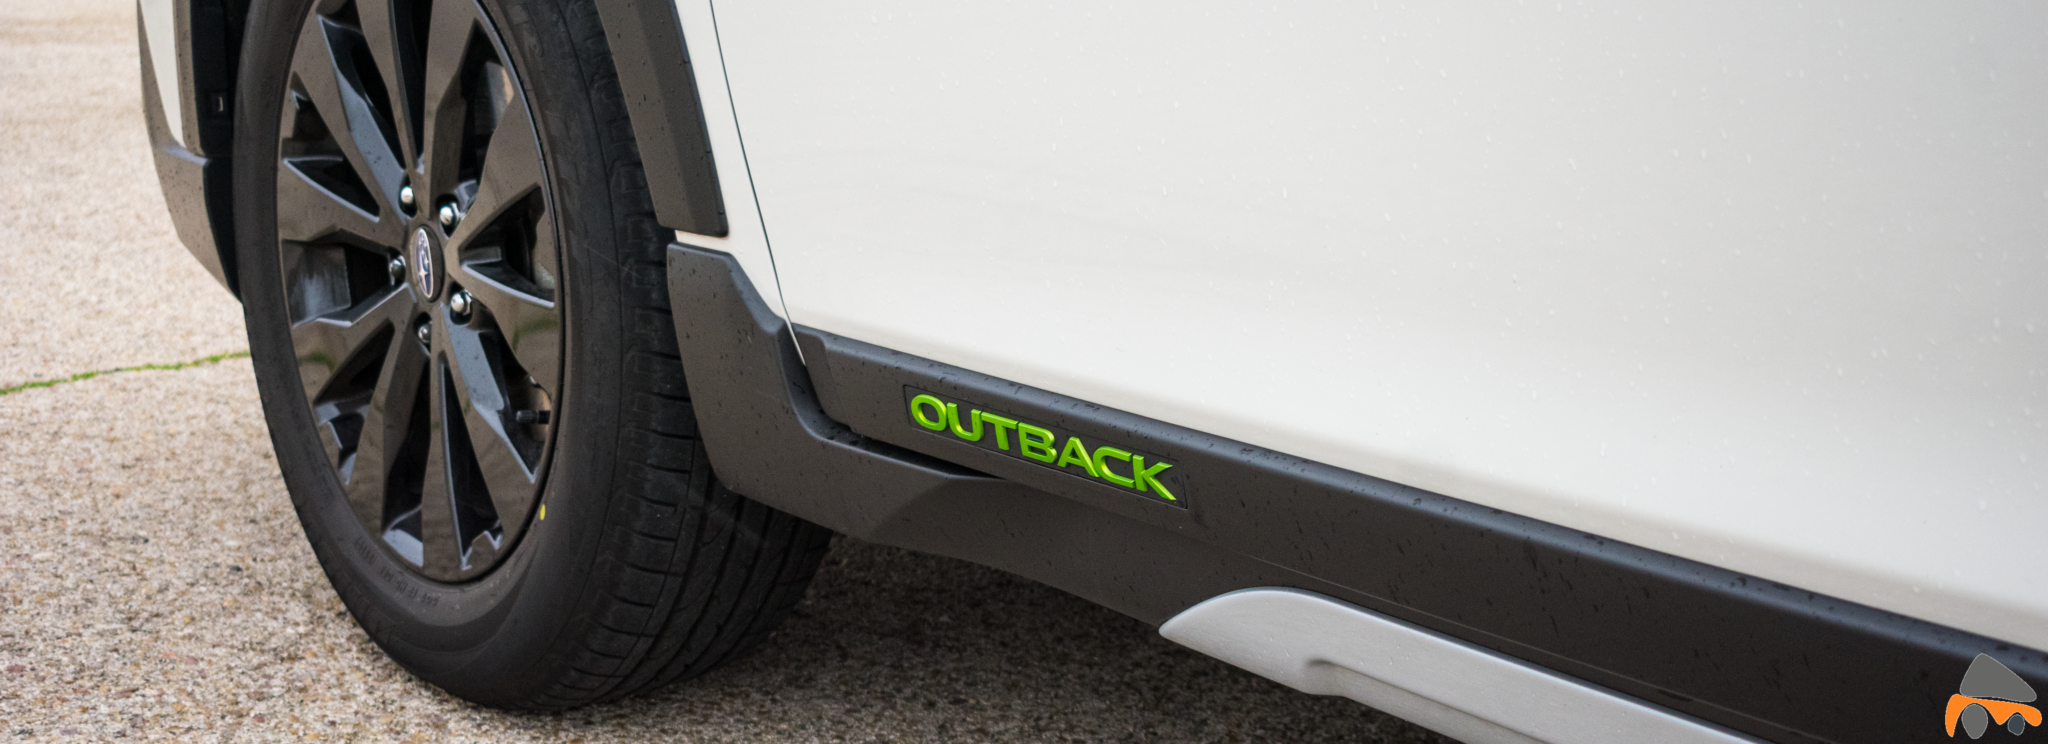 Logo Outback Subaru Outback Black Edition GLP - Subaru Outback Black Edition GLP: Un familiar diseñado para el confort y las excursiones